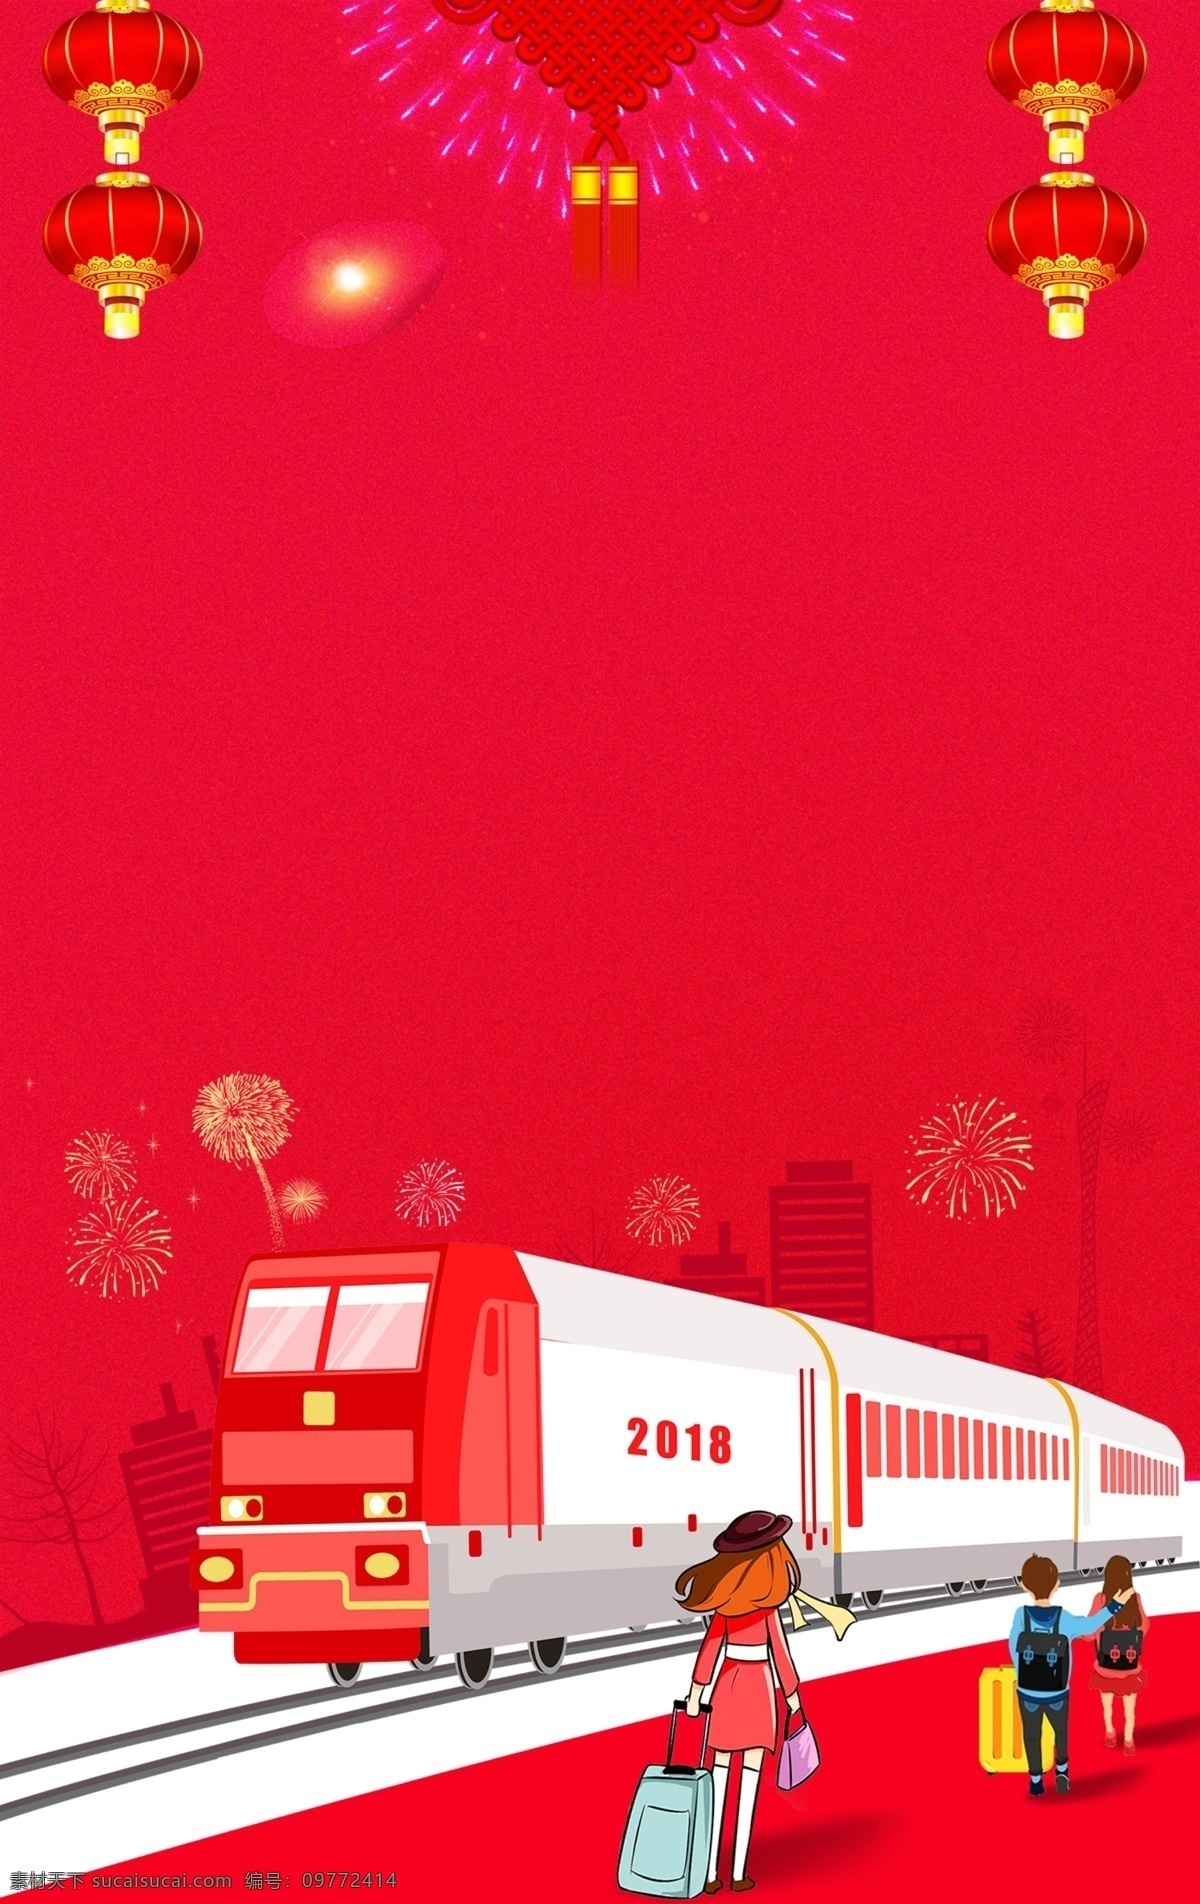 2018 回家 过年 h5 红色 背景 城市 灯笼 火车 建筑 列车 旅途 团圆 行李 烟花 中国结